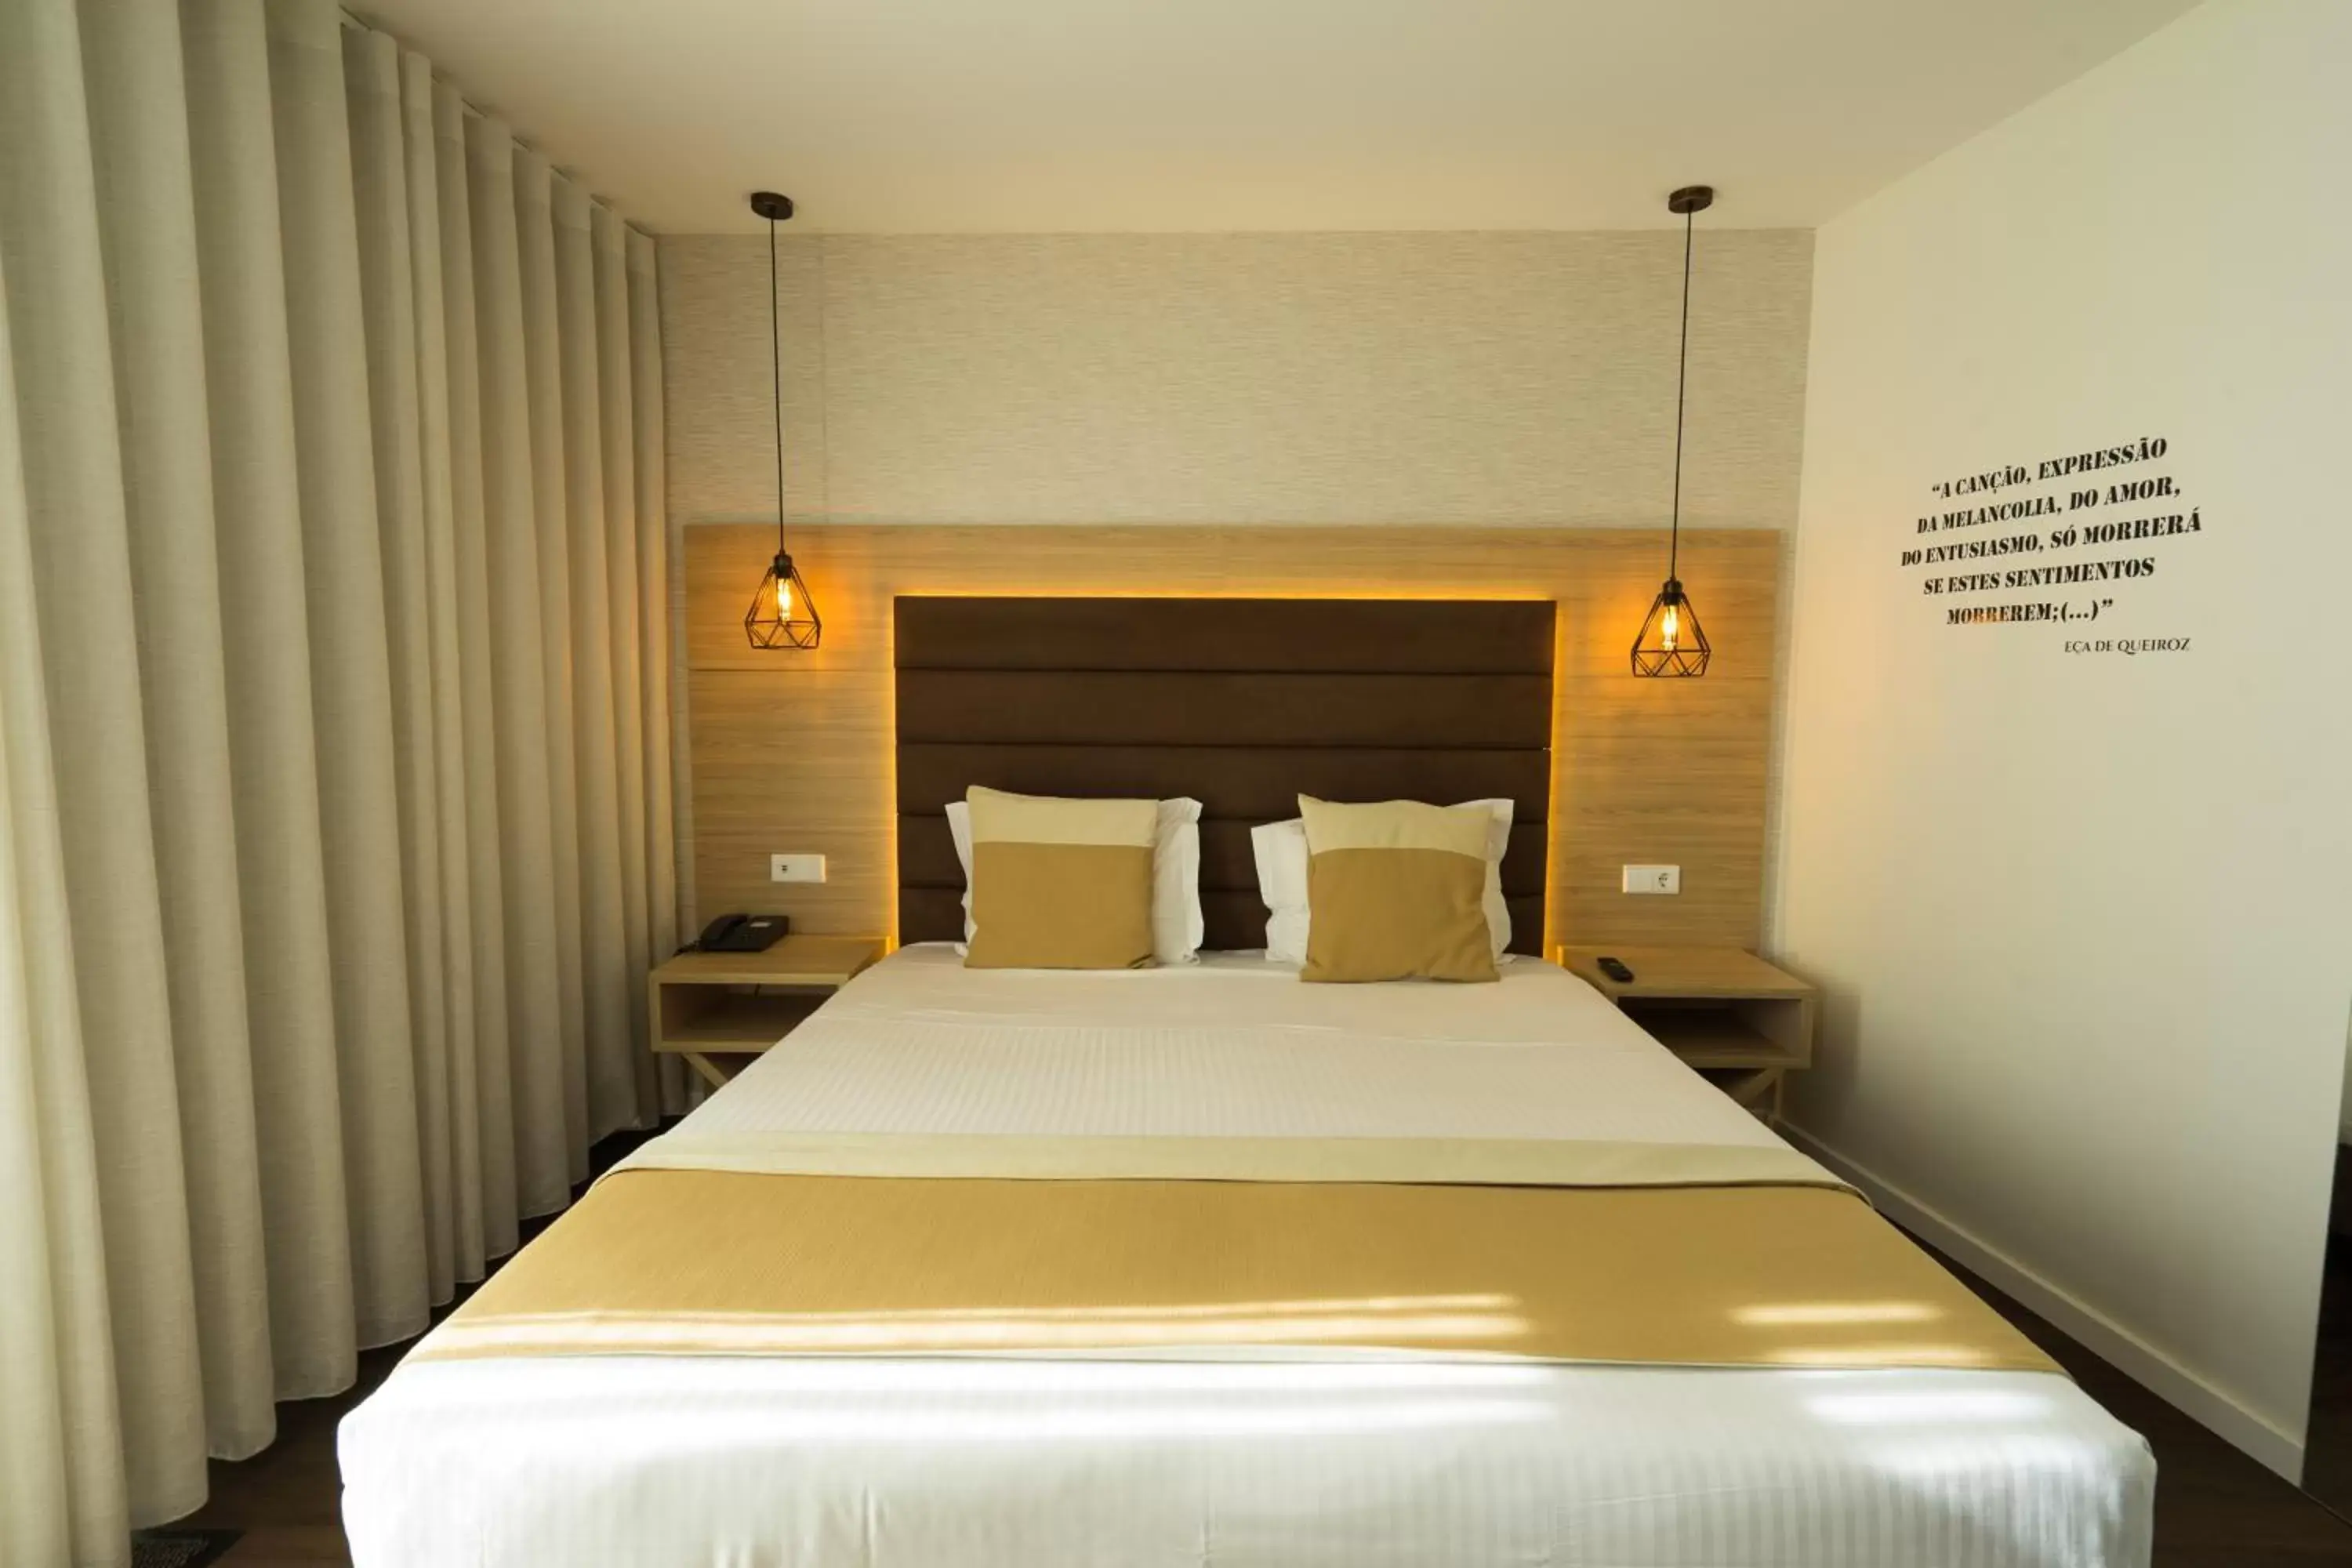 Decorative detail, Bed in Grande Hotel da Povoa